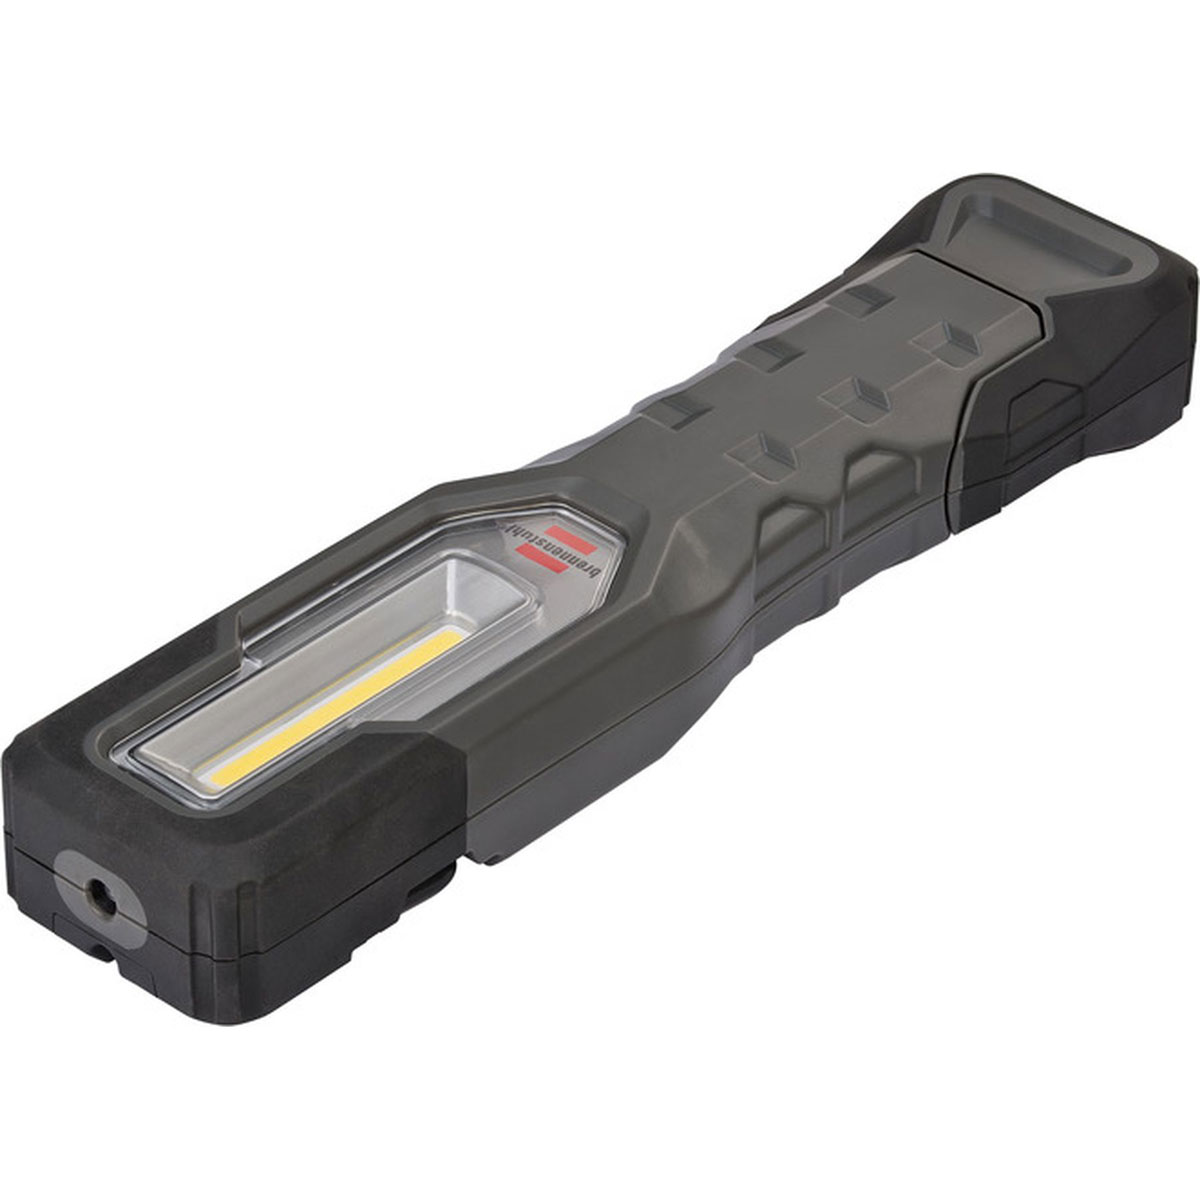 Brennenstuhl LED-Akku-Leuchte HL 1000 A grau-schwarz | K000064968